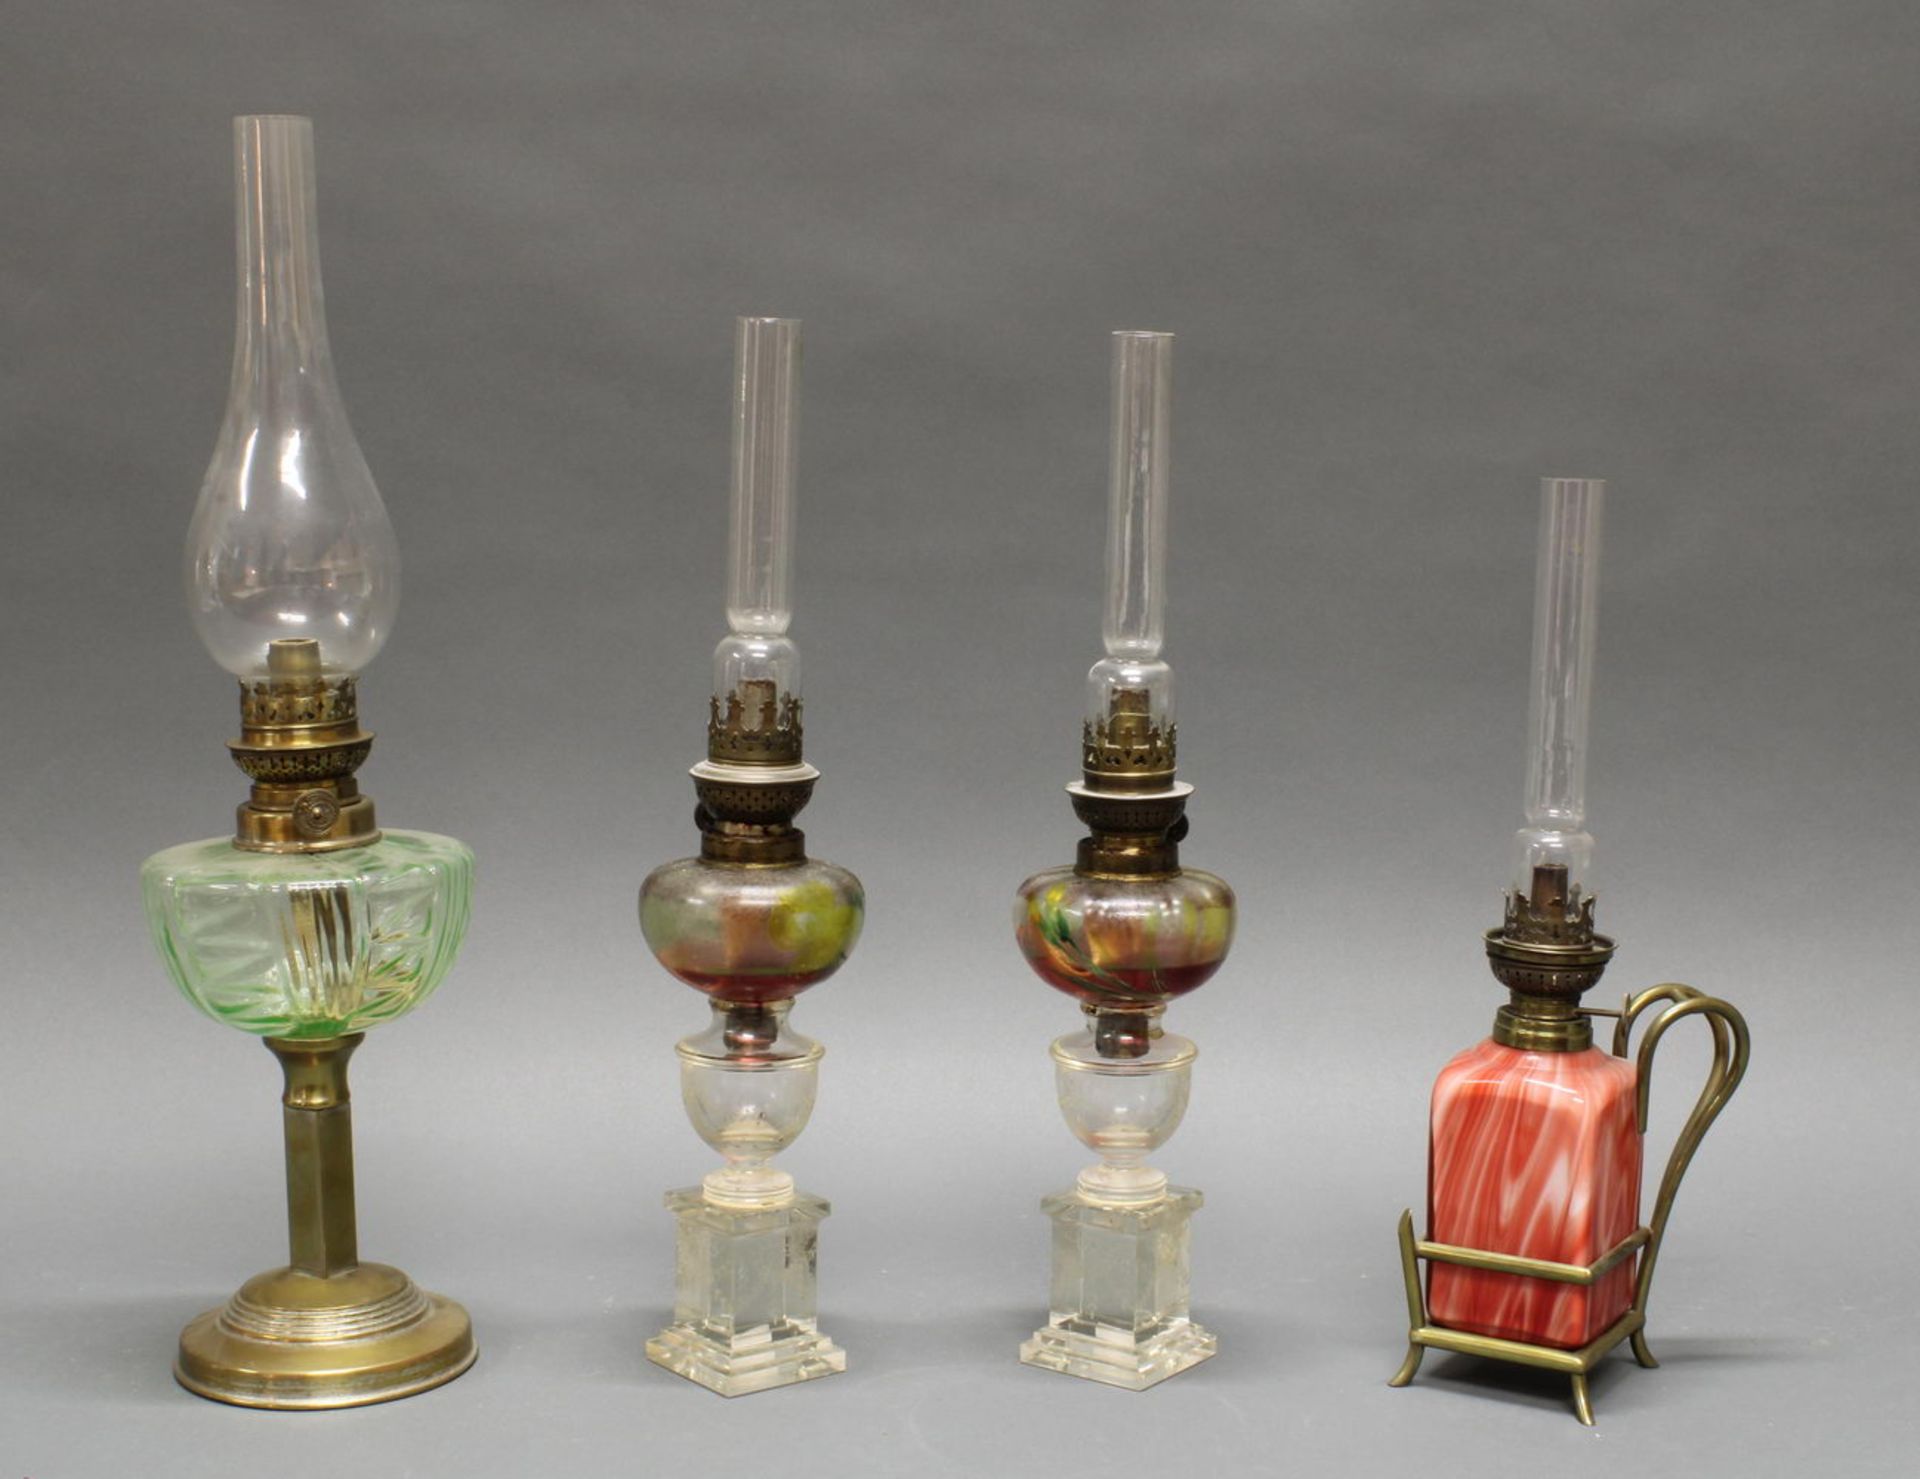 4 Petroleumlampen, 19./20. Jh., verschieden, 38.5-52 cm hoch, Altersspuren, 1x Glaszylinder schadha